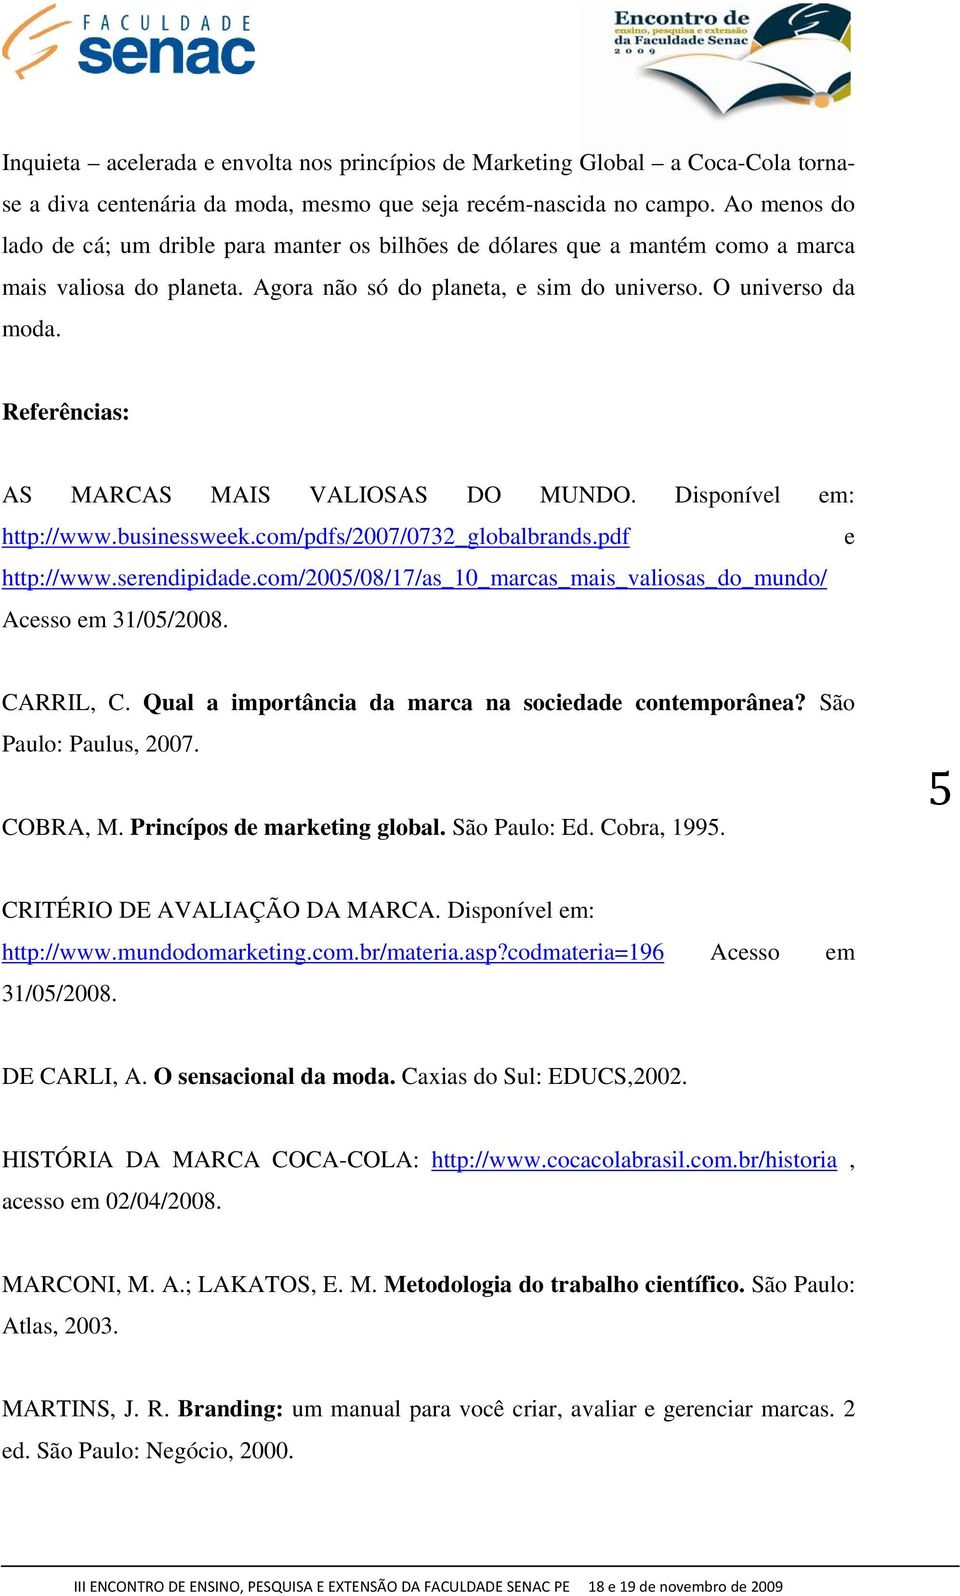 Referências: AS MARCAS MAIS VALIOSAS DO MUNDO. Disponível em: http://www.businessweek.com/pdfs/2007/0732_globalbrands.pdf e http://www.serendipidade.